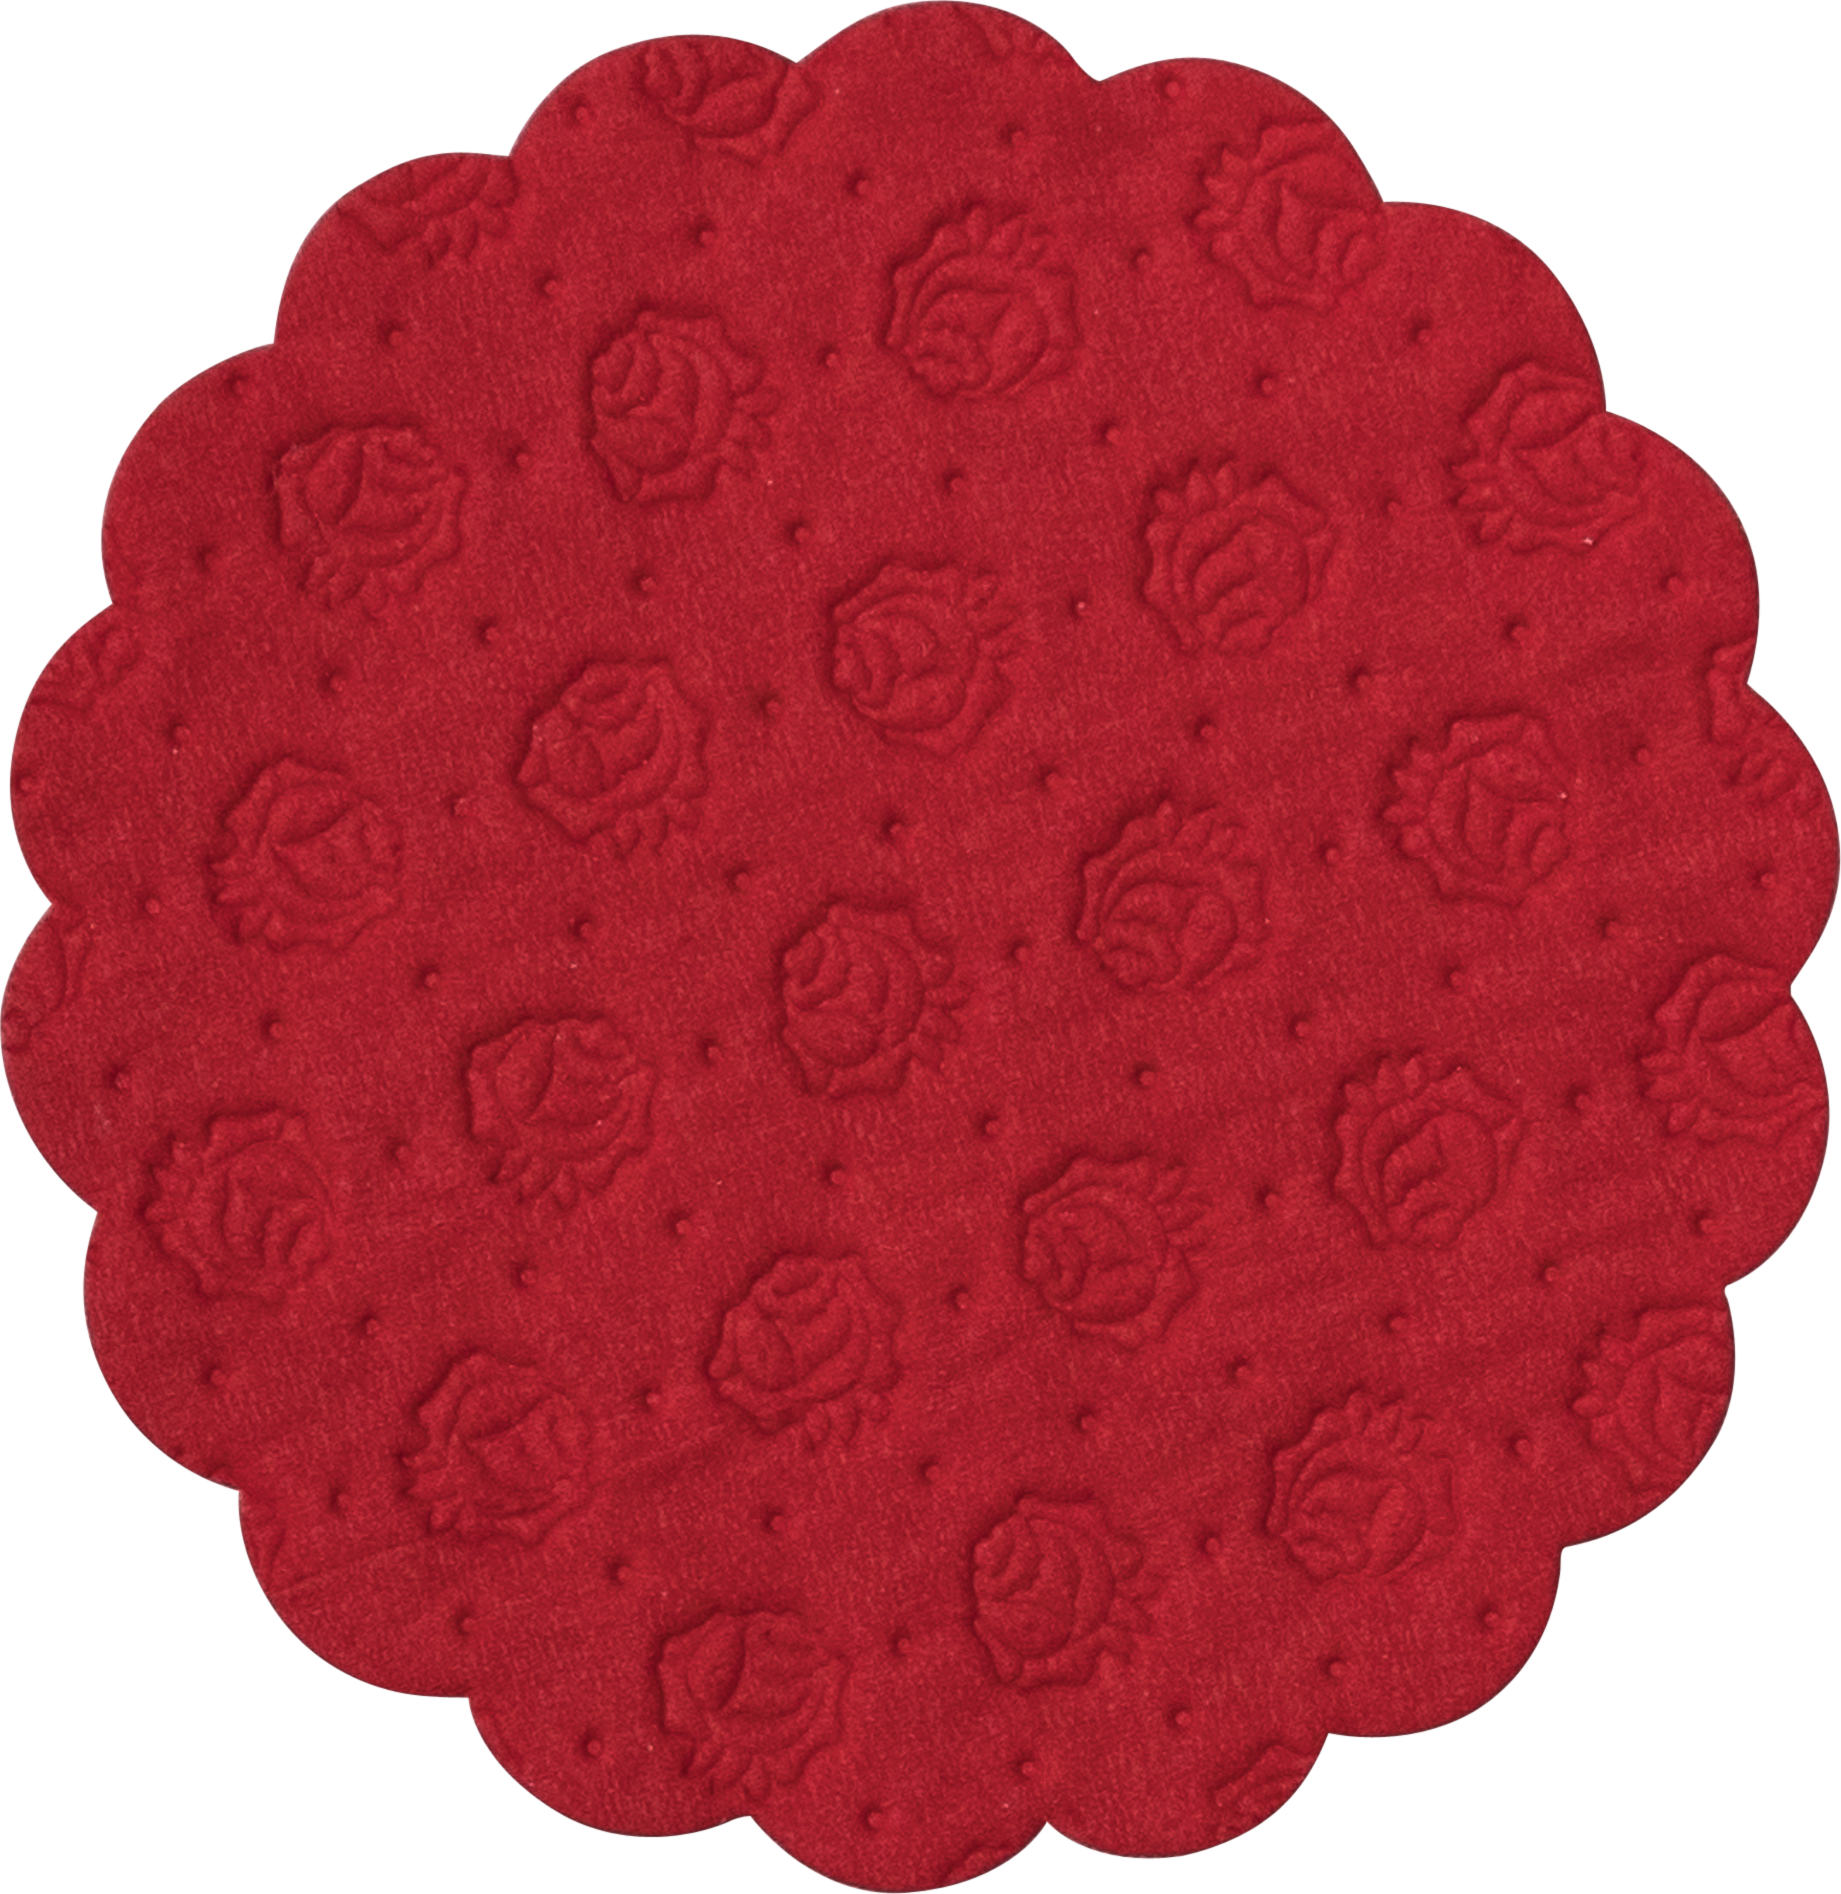 Tissue-Tassendeckchen rot, ø 9 cm